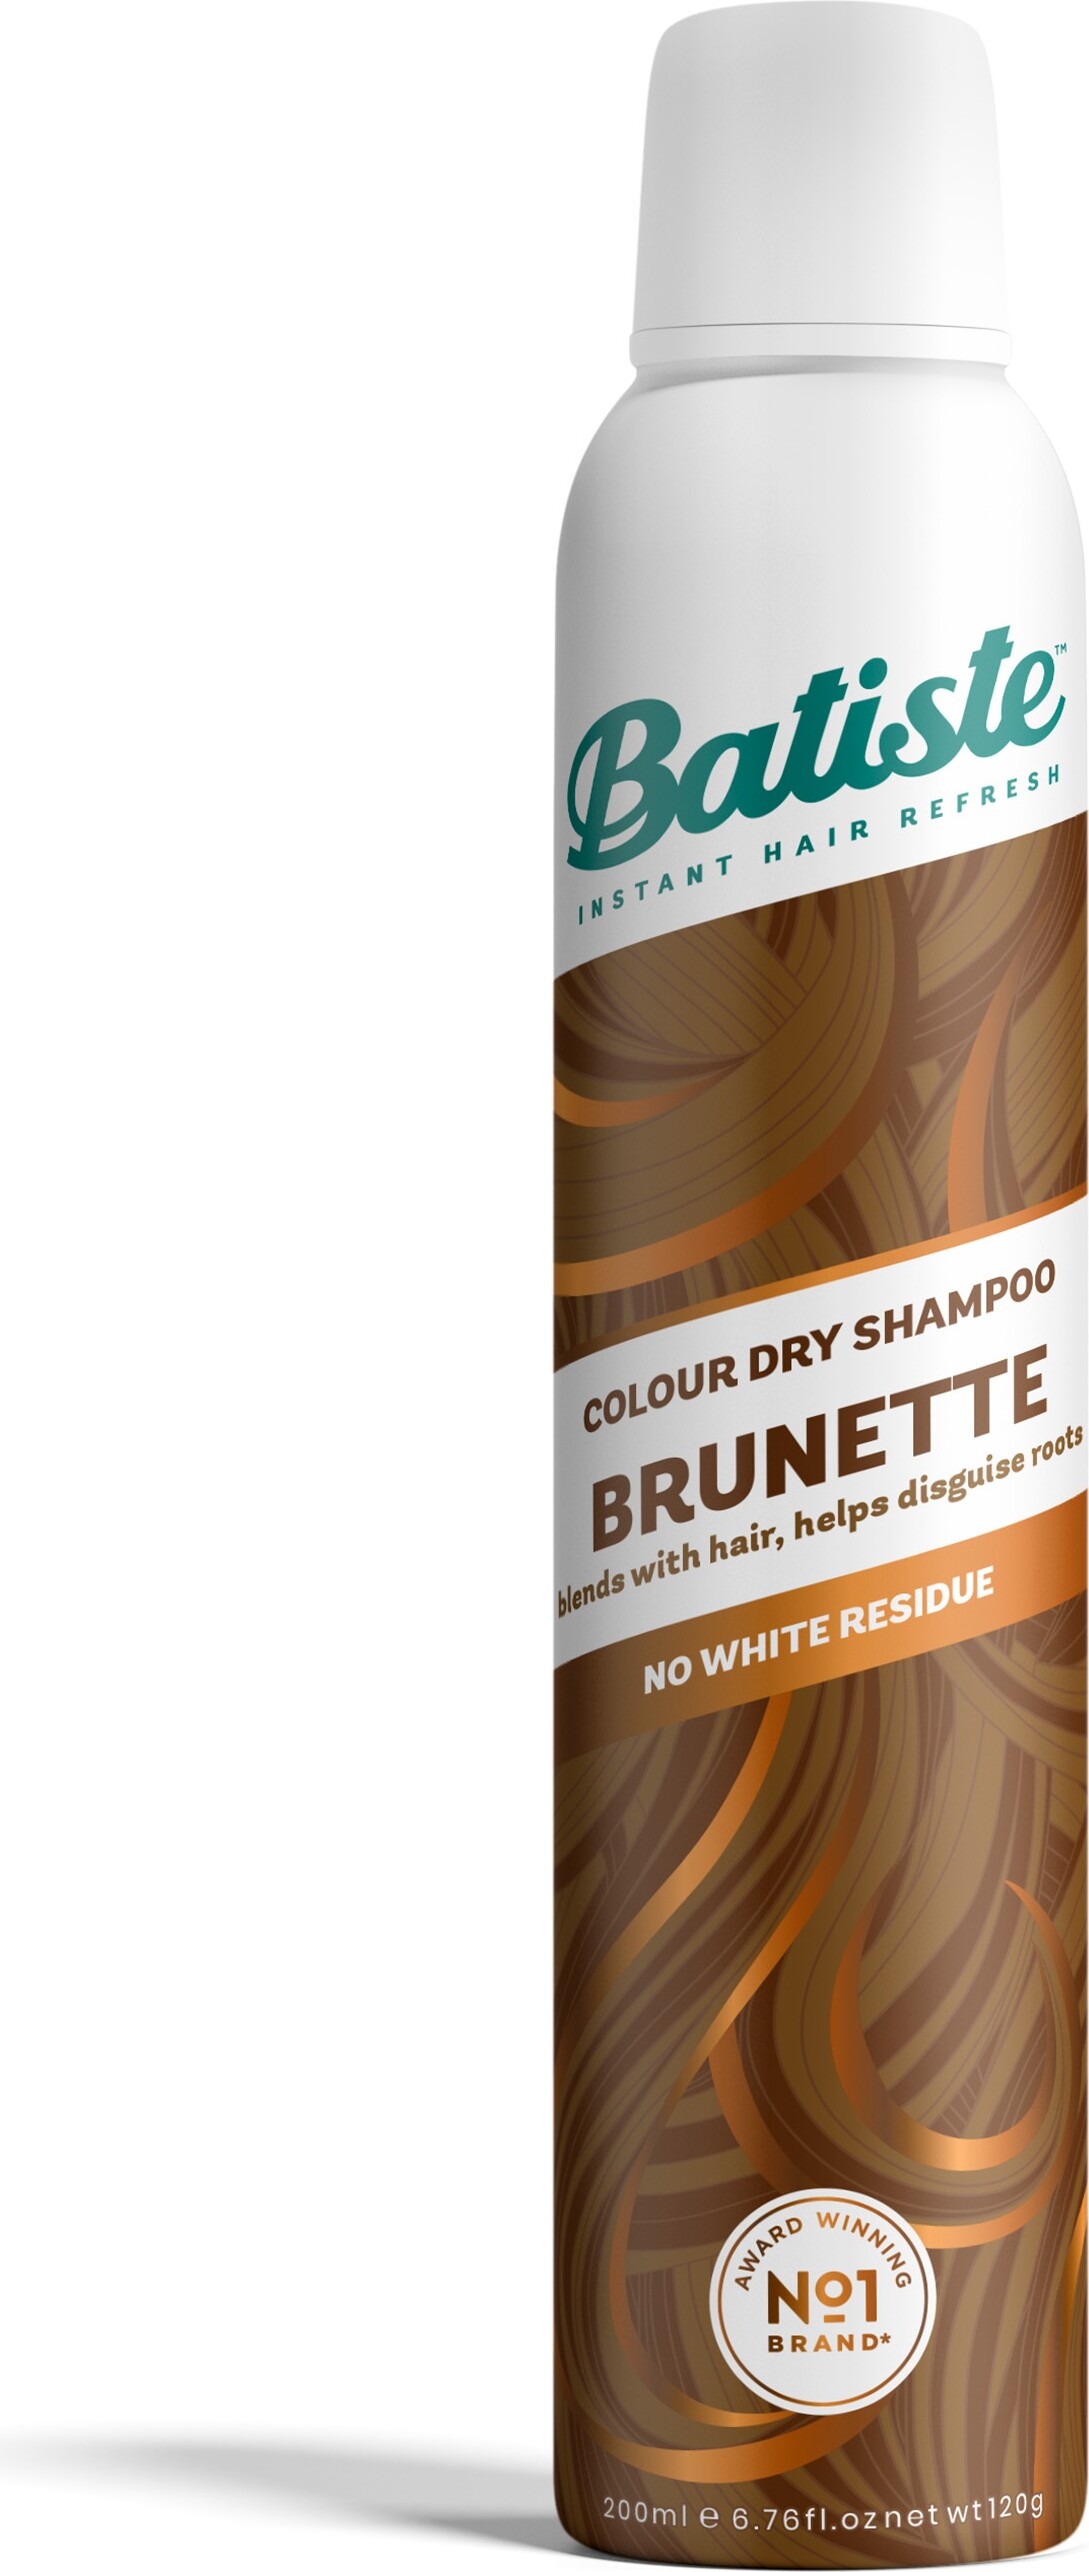 Billede af Batiste - Colour Dry Shampoo - Brunette 200 Ml